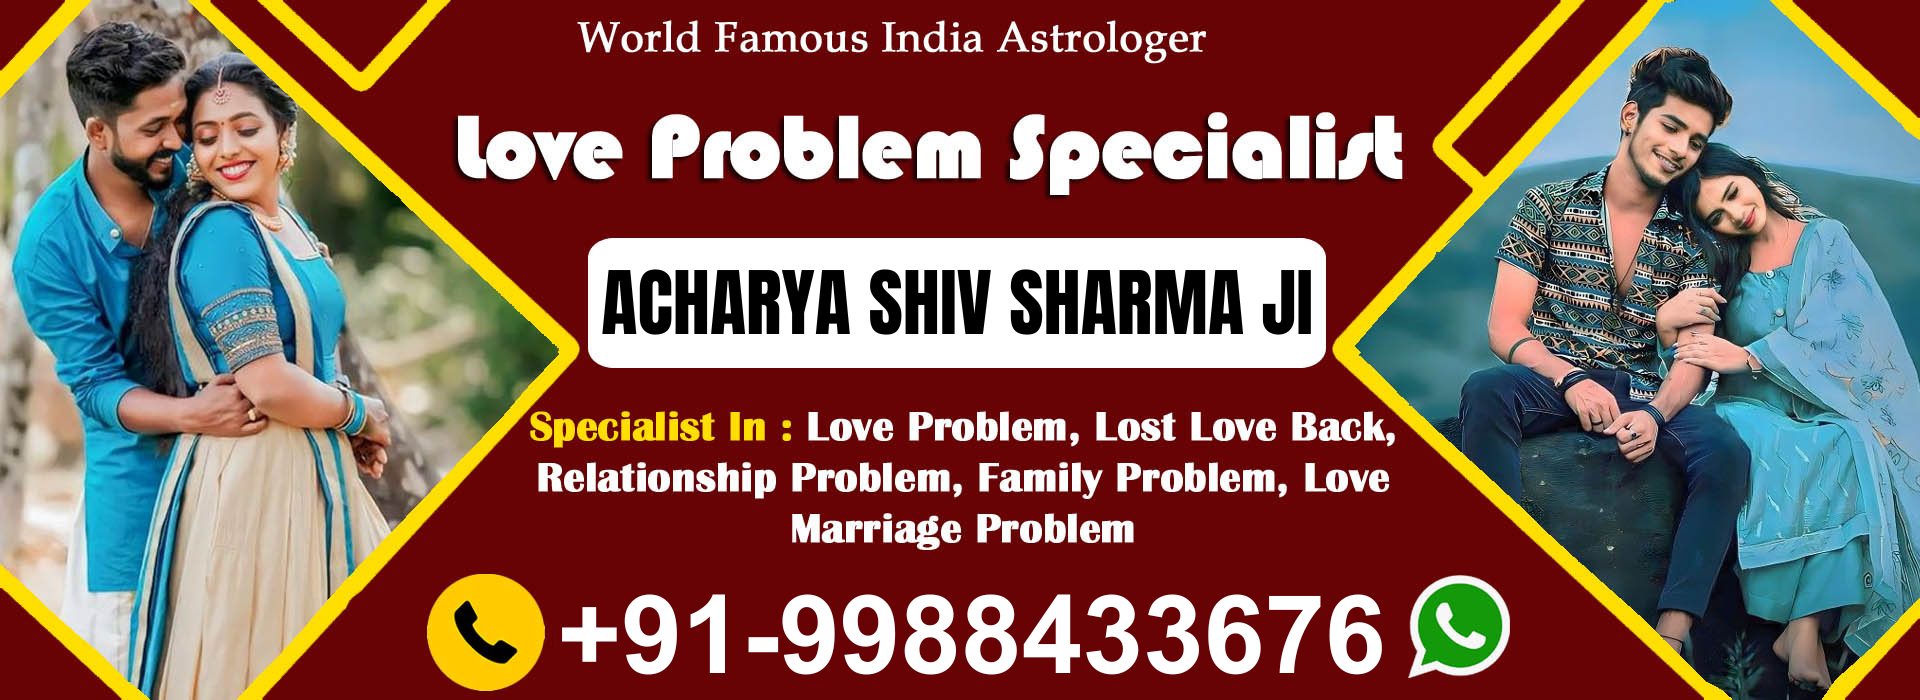 Acharya Shiv Sharma +91-9988433676